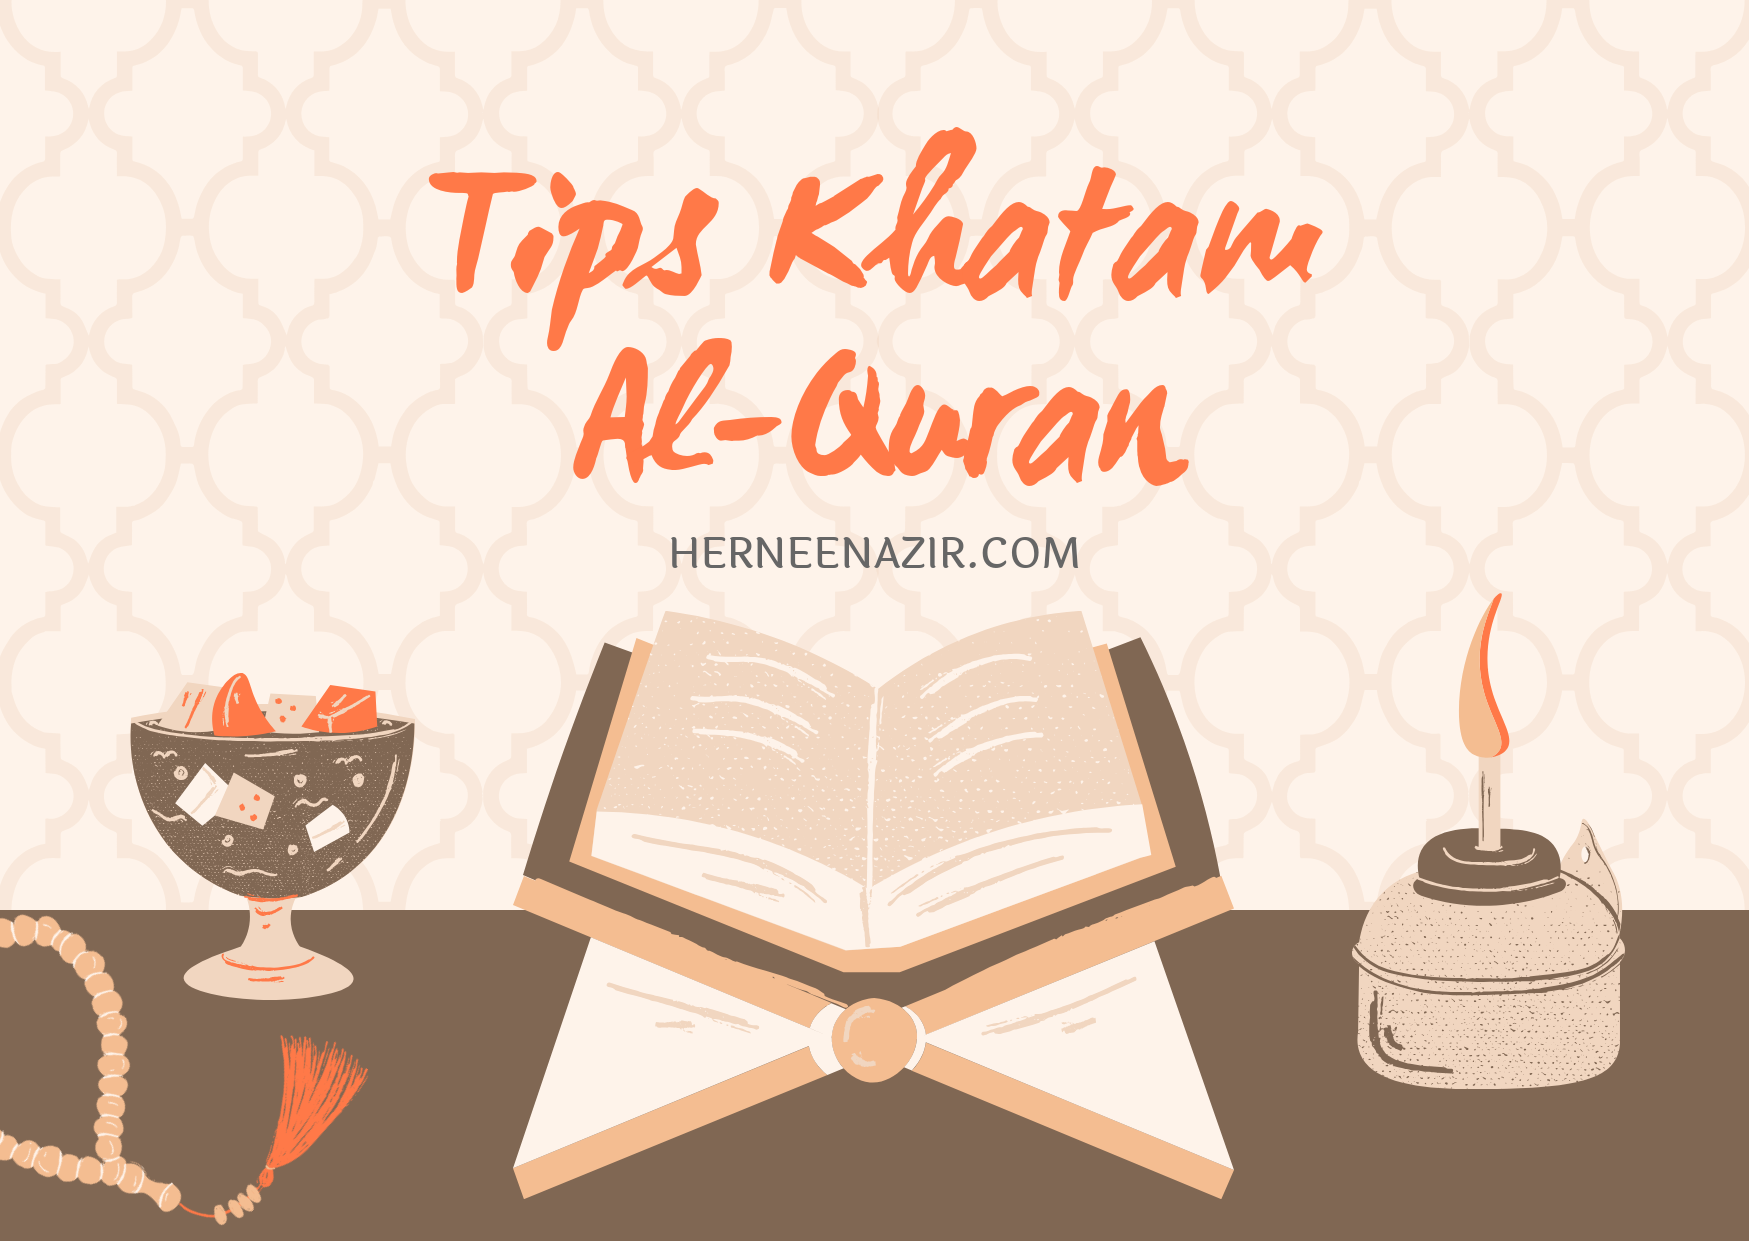 Tips Khatam Al-Quran